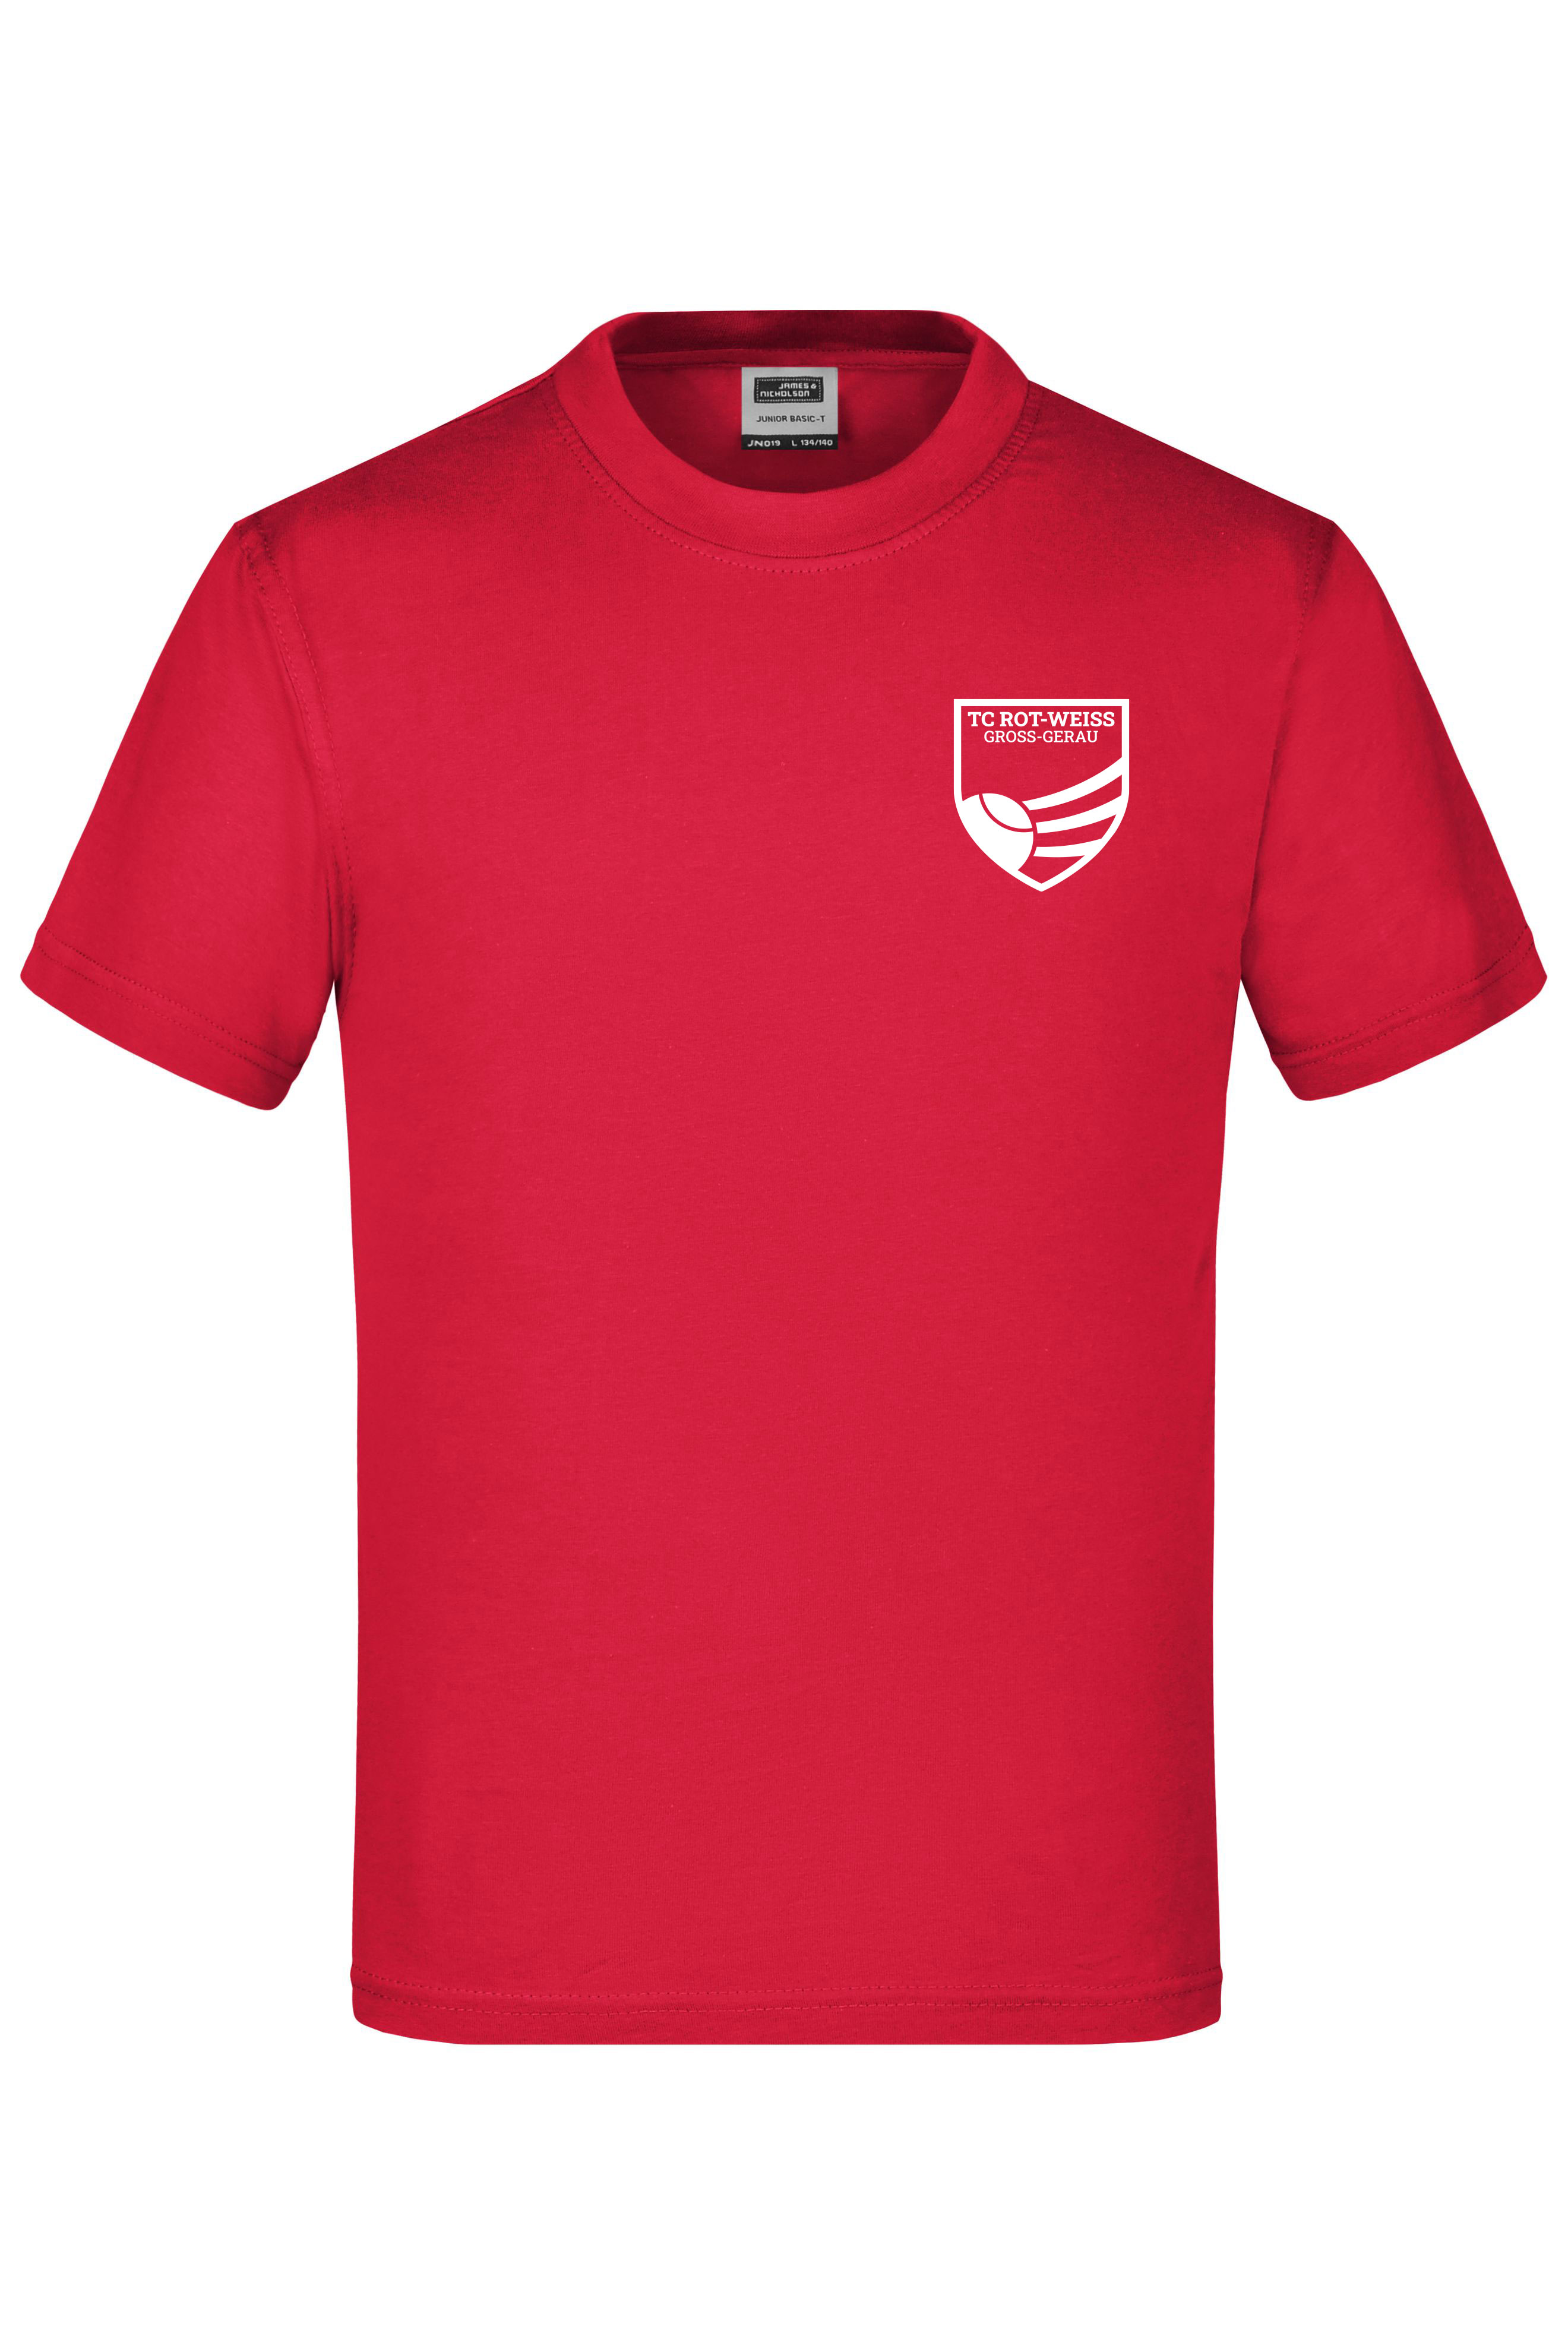 TC Rot-Weiss - Vorteil GG - Kinder T-Shirt rot